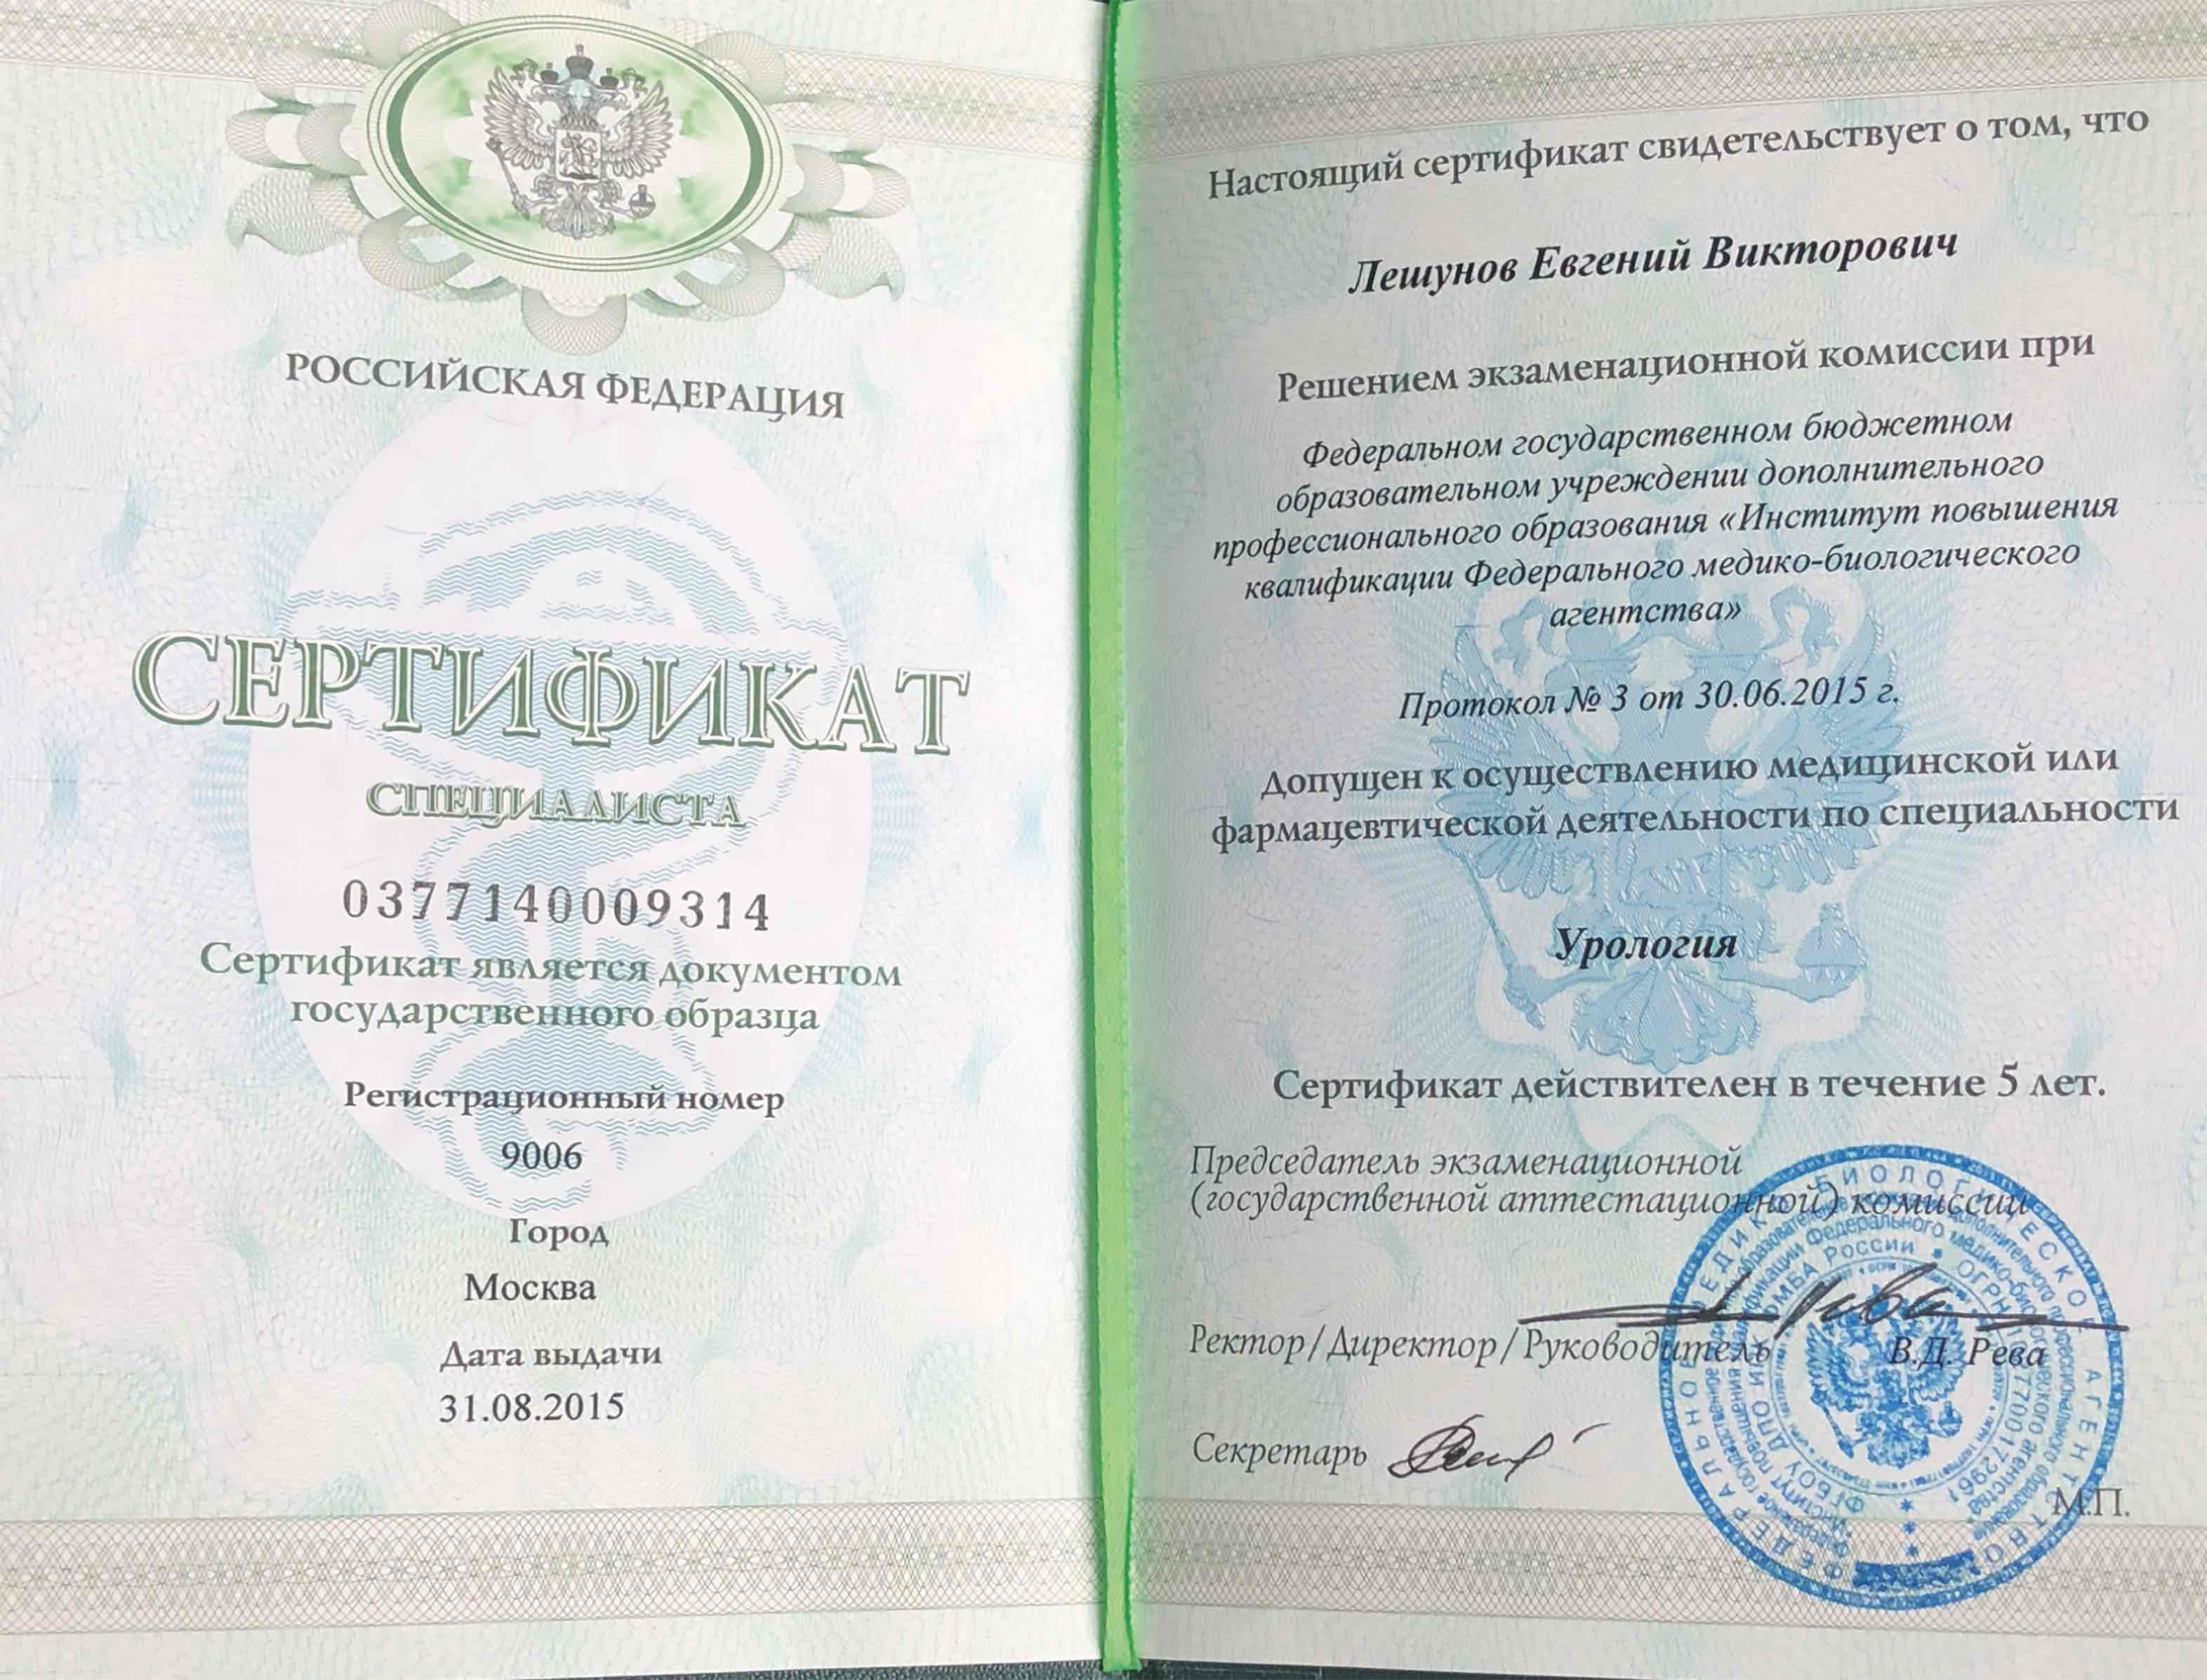 Сертификат специалиста  "Урология"